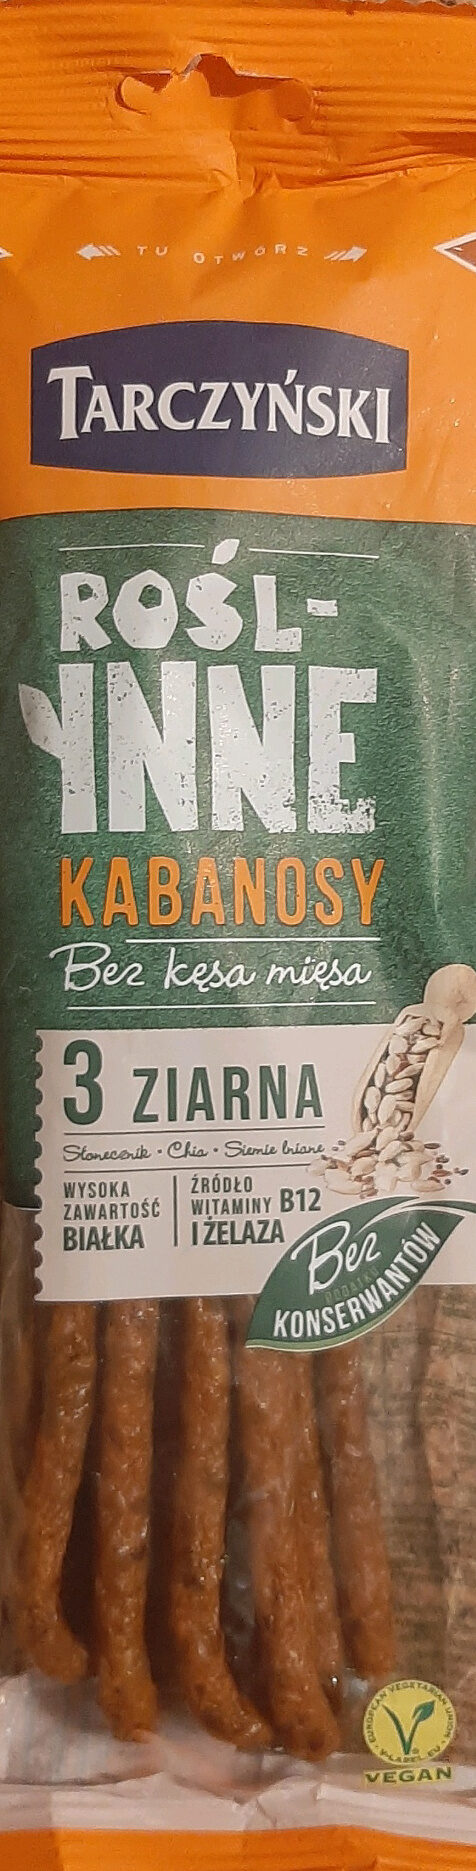 Rośl-inne Kabanosy 3 Ziarna - Produkt